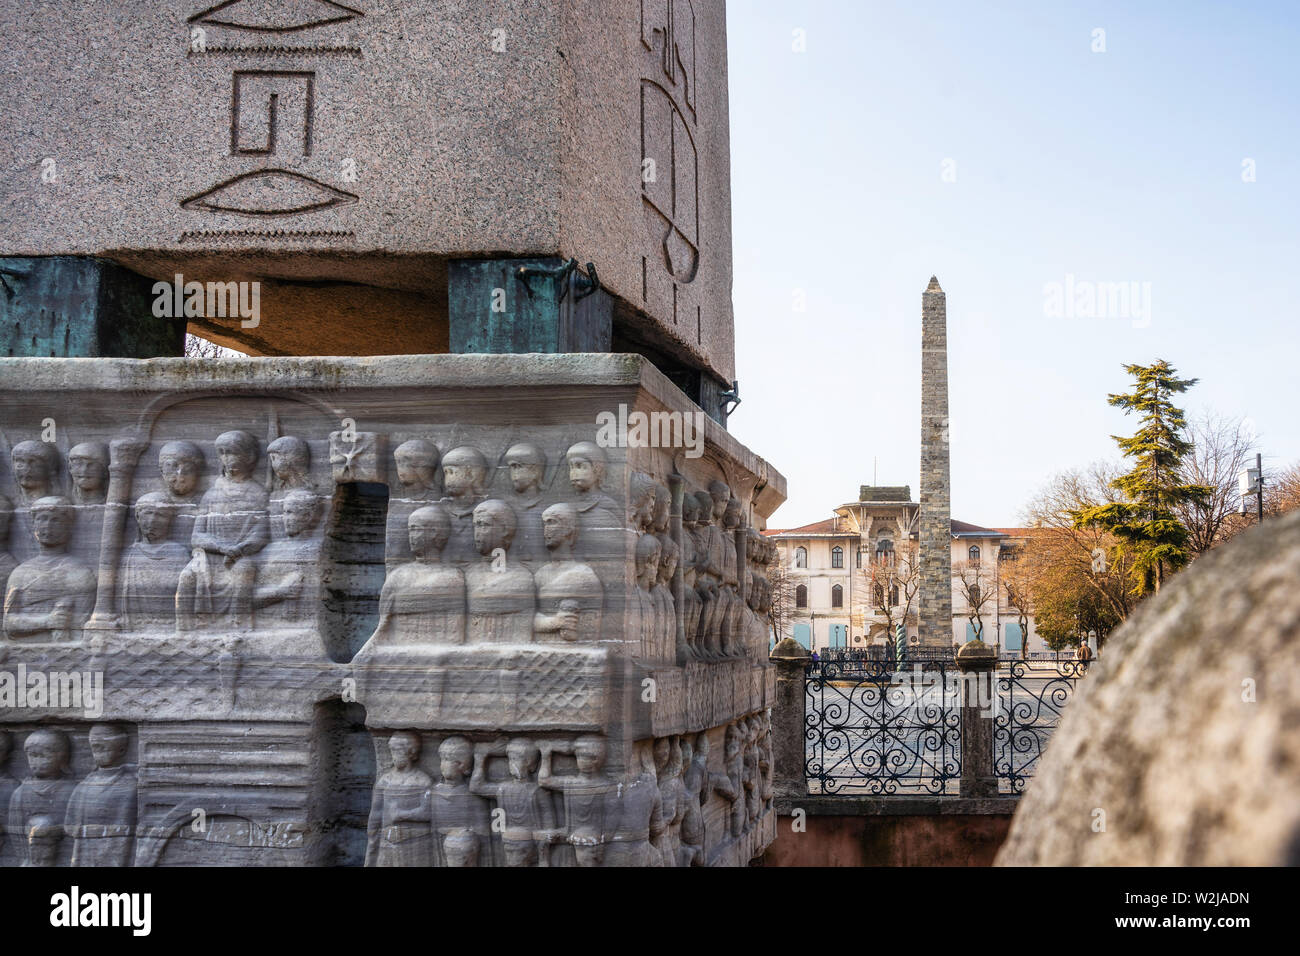 Detalles de los bajorrelieves del pedestal de Teodosio Obelisco y el Obelisco amurallado sobre antecedentes en el Hipódromo de Constantinopla en Estambul, Turquía Foto de stock